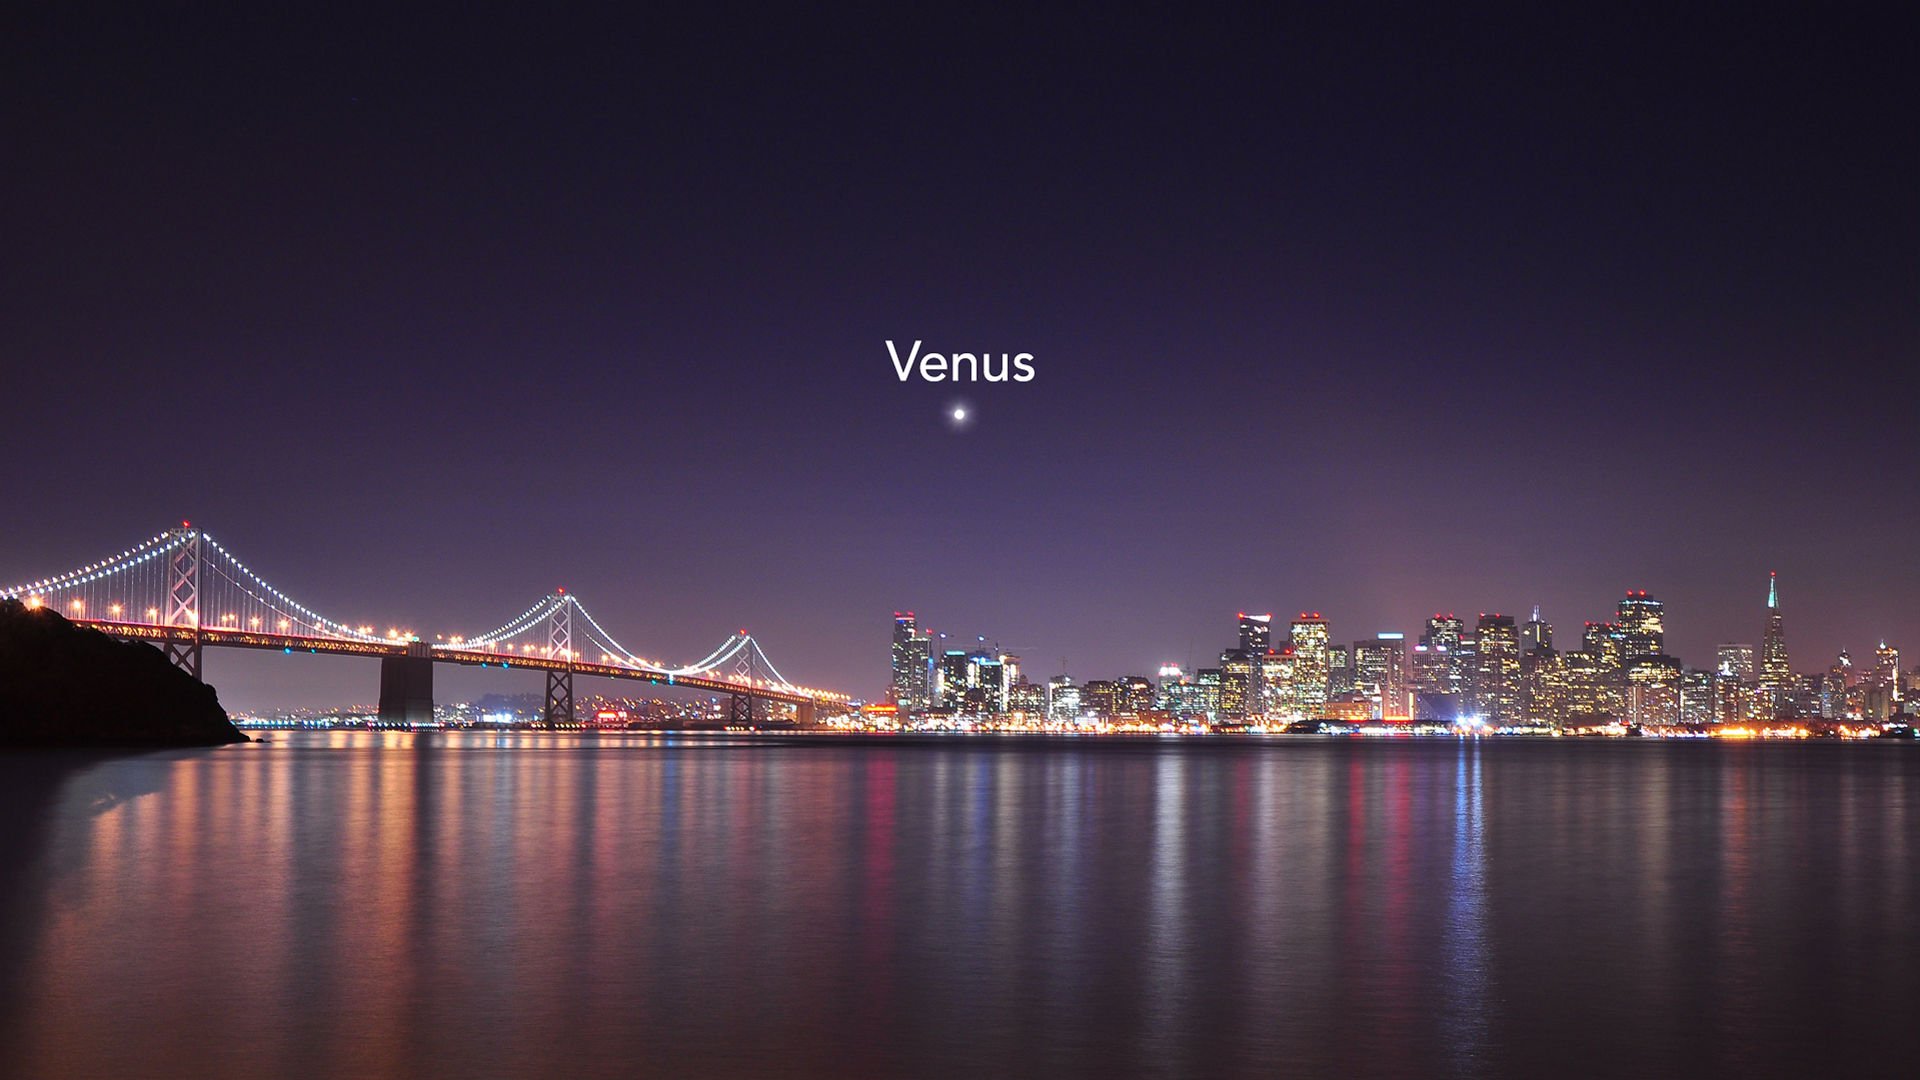 Mejor tiempo para ver Venus en el cielo nocturno: El planeta alcanza su máxima elongación oriental